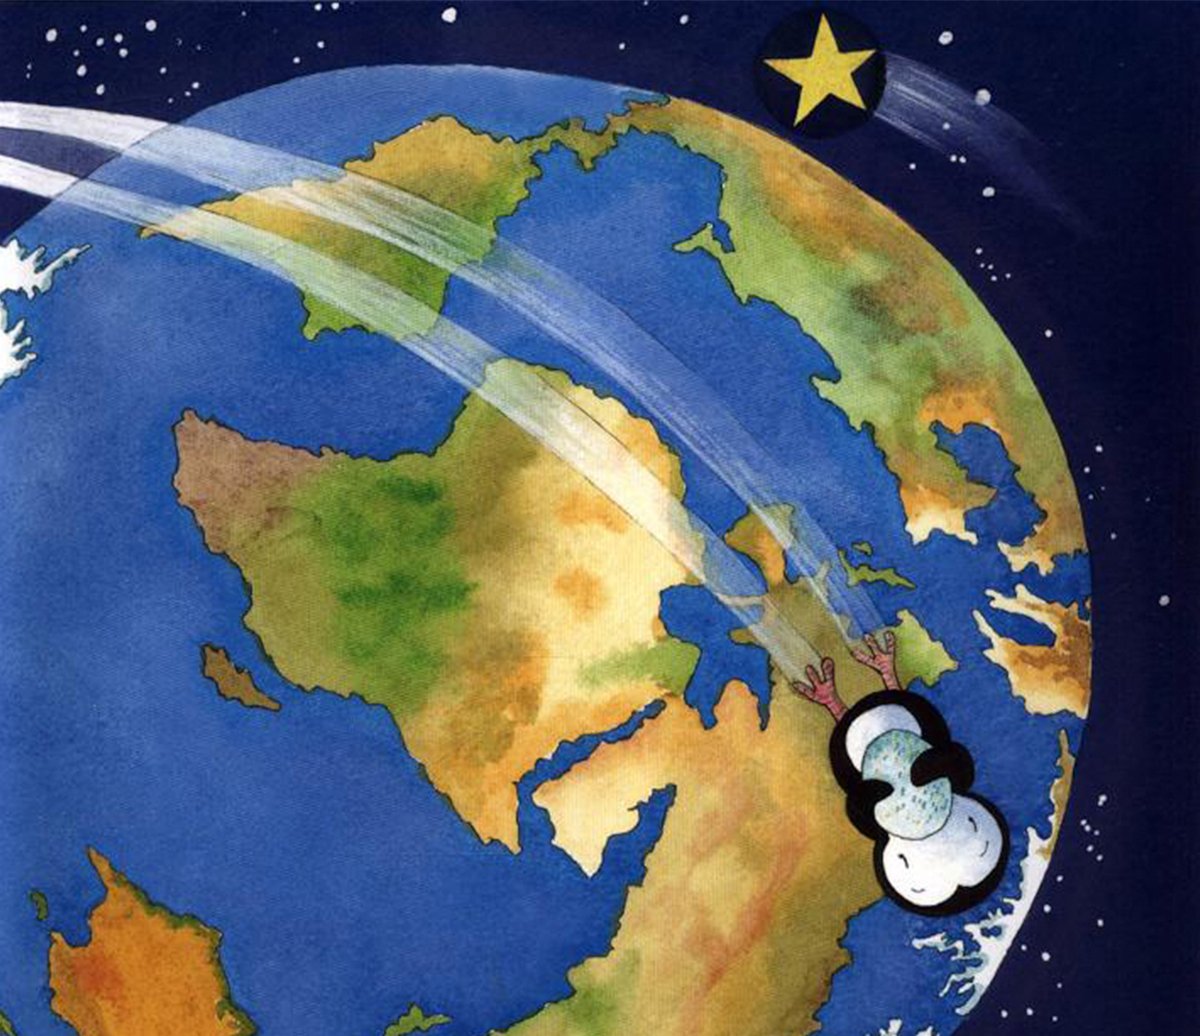 debi-gliori-penguin-earth.jpg